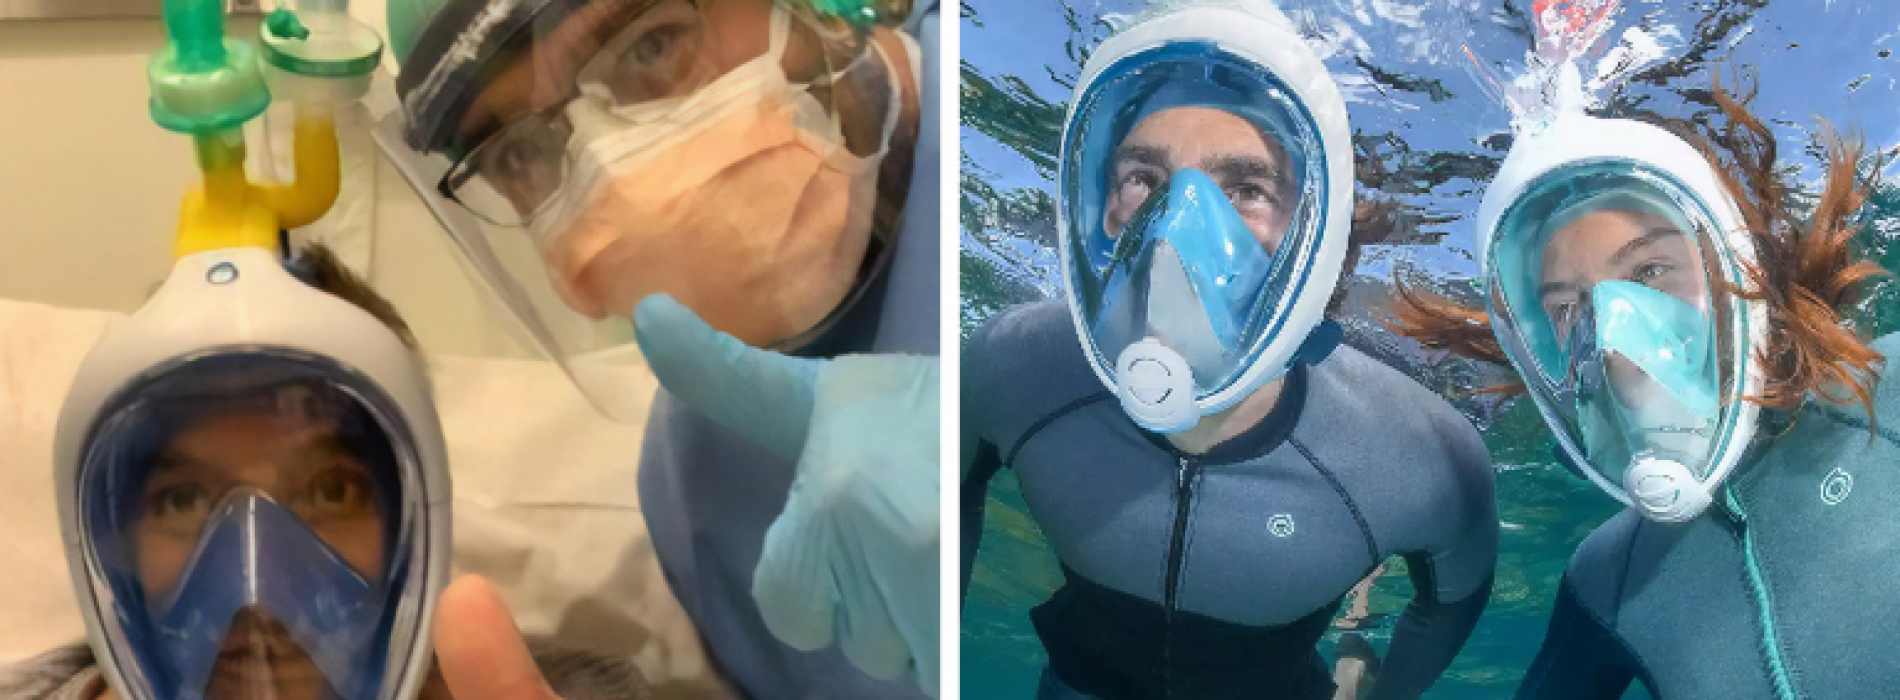 Ingenieurs maken ventilatoren van snorkelmaskers om het coronavirus te bestrijden